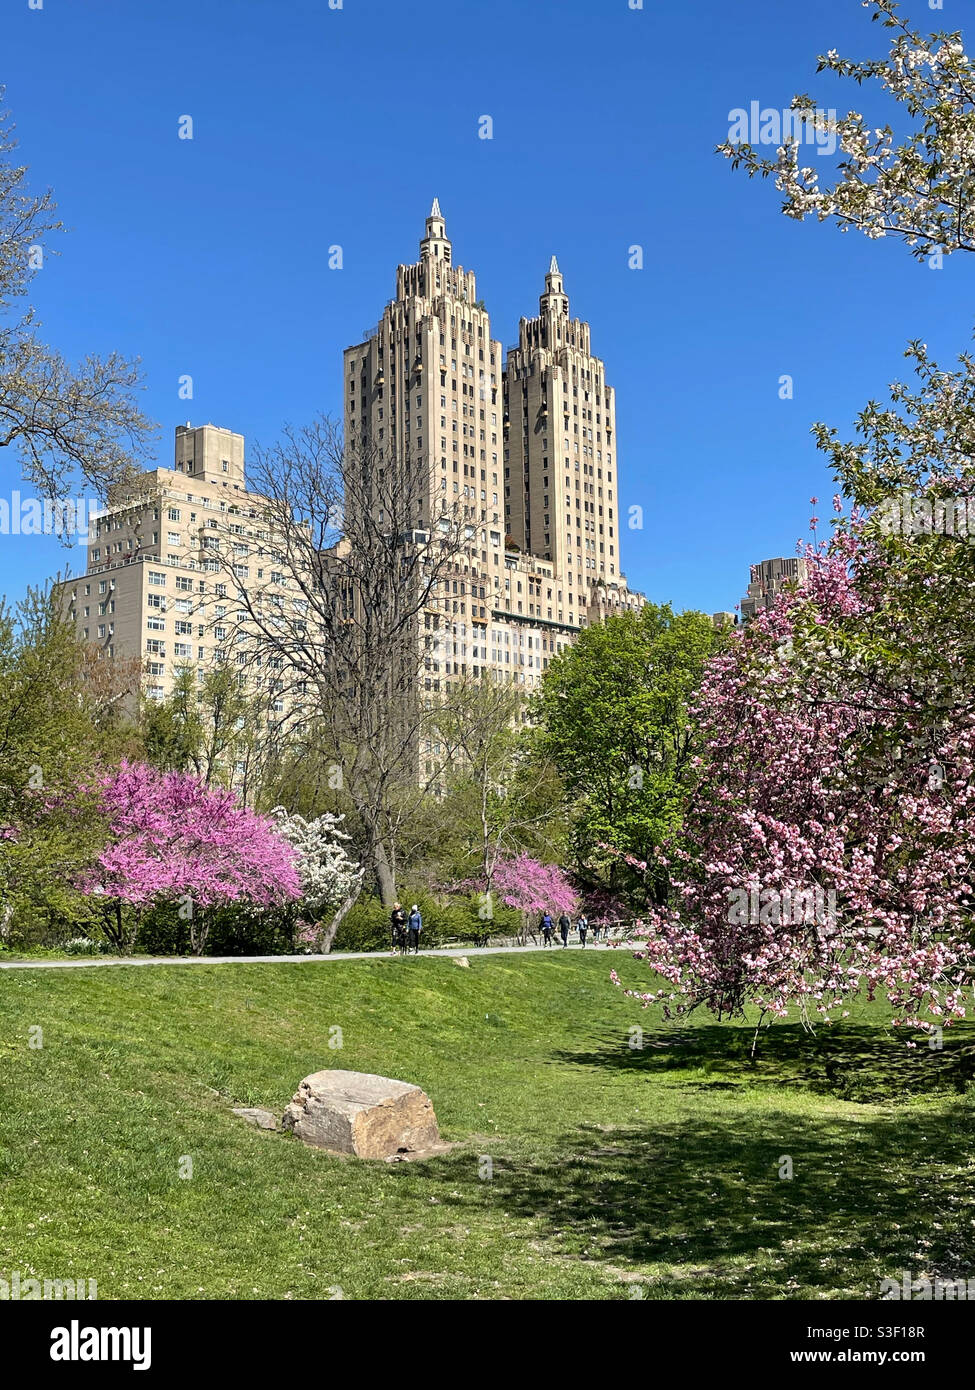 Das Eldorado Apartmenthaus liegt im Central Park West in der Nähe der blühenden Kwanzan Kirschbäume des Central Park, NYC, USA Stockfoto